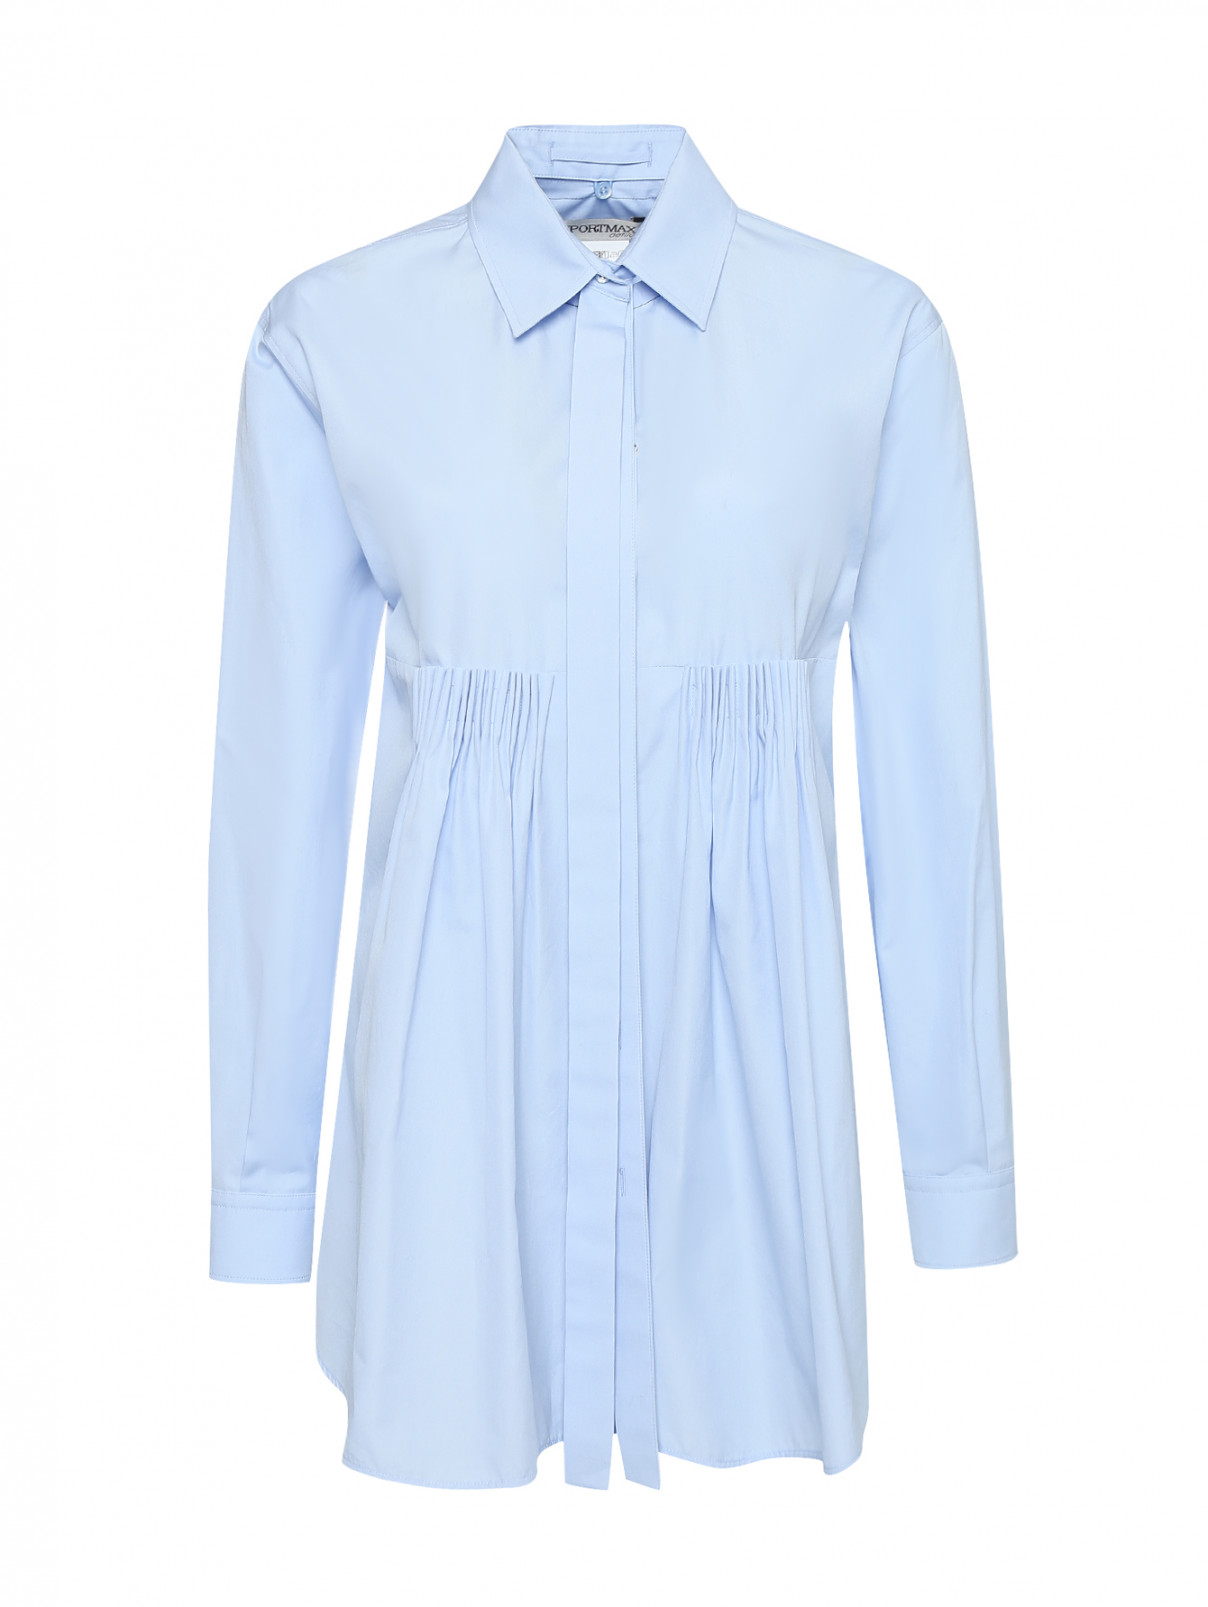 Блуза из хлопка, со сборкой Sportmax  –  Общий вид  – Цвет:  Синий